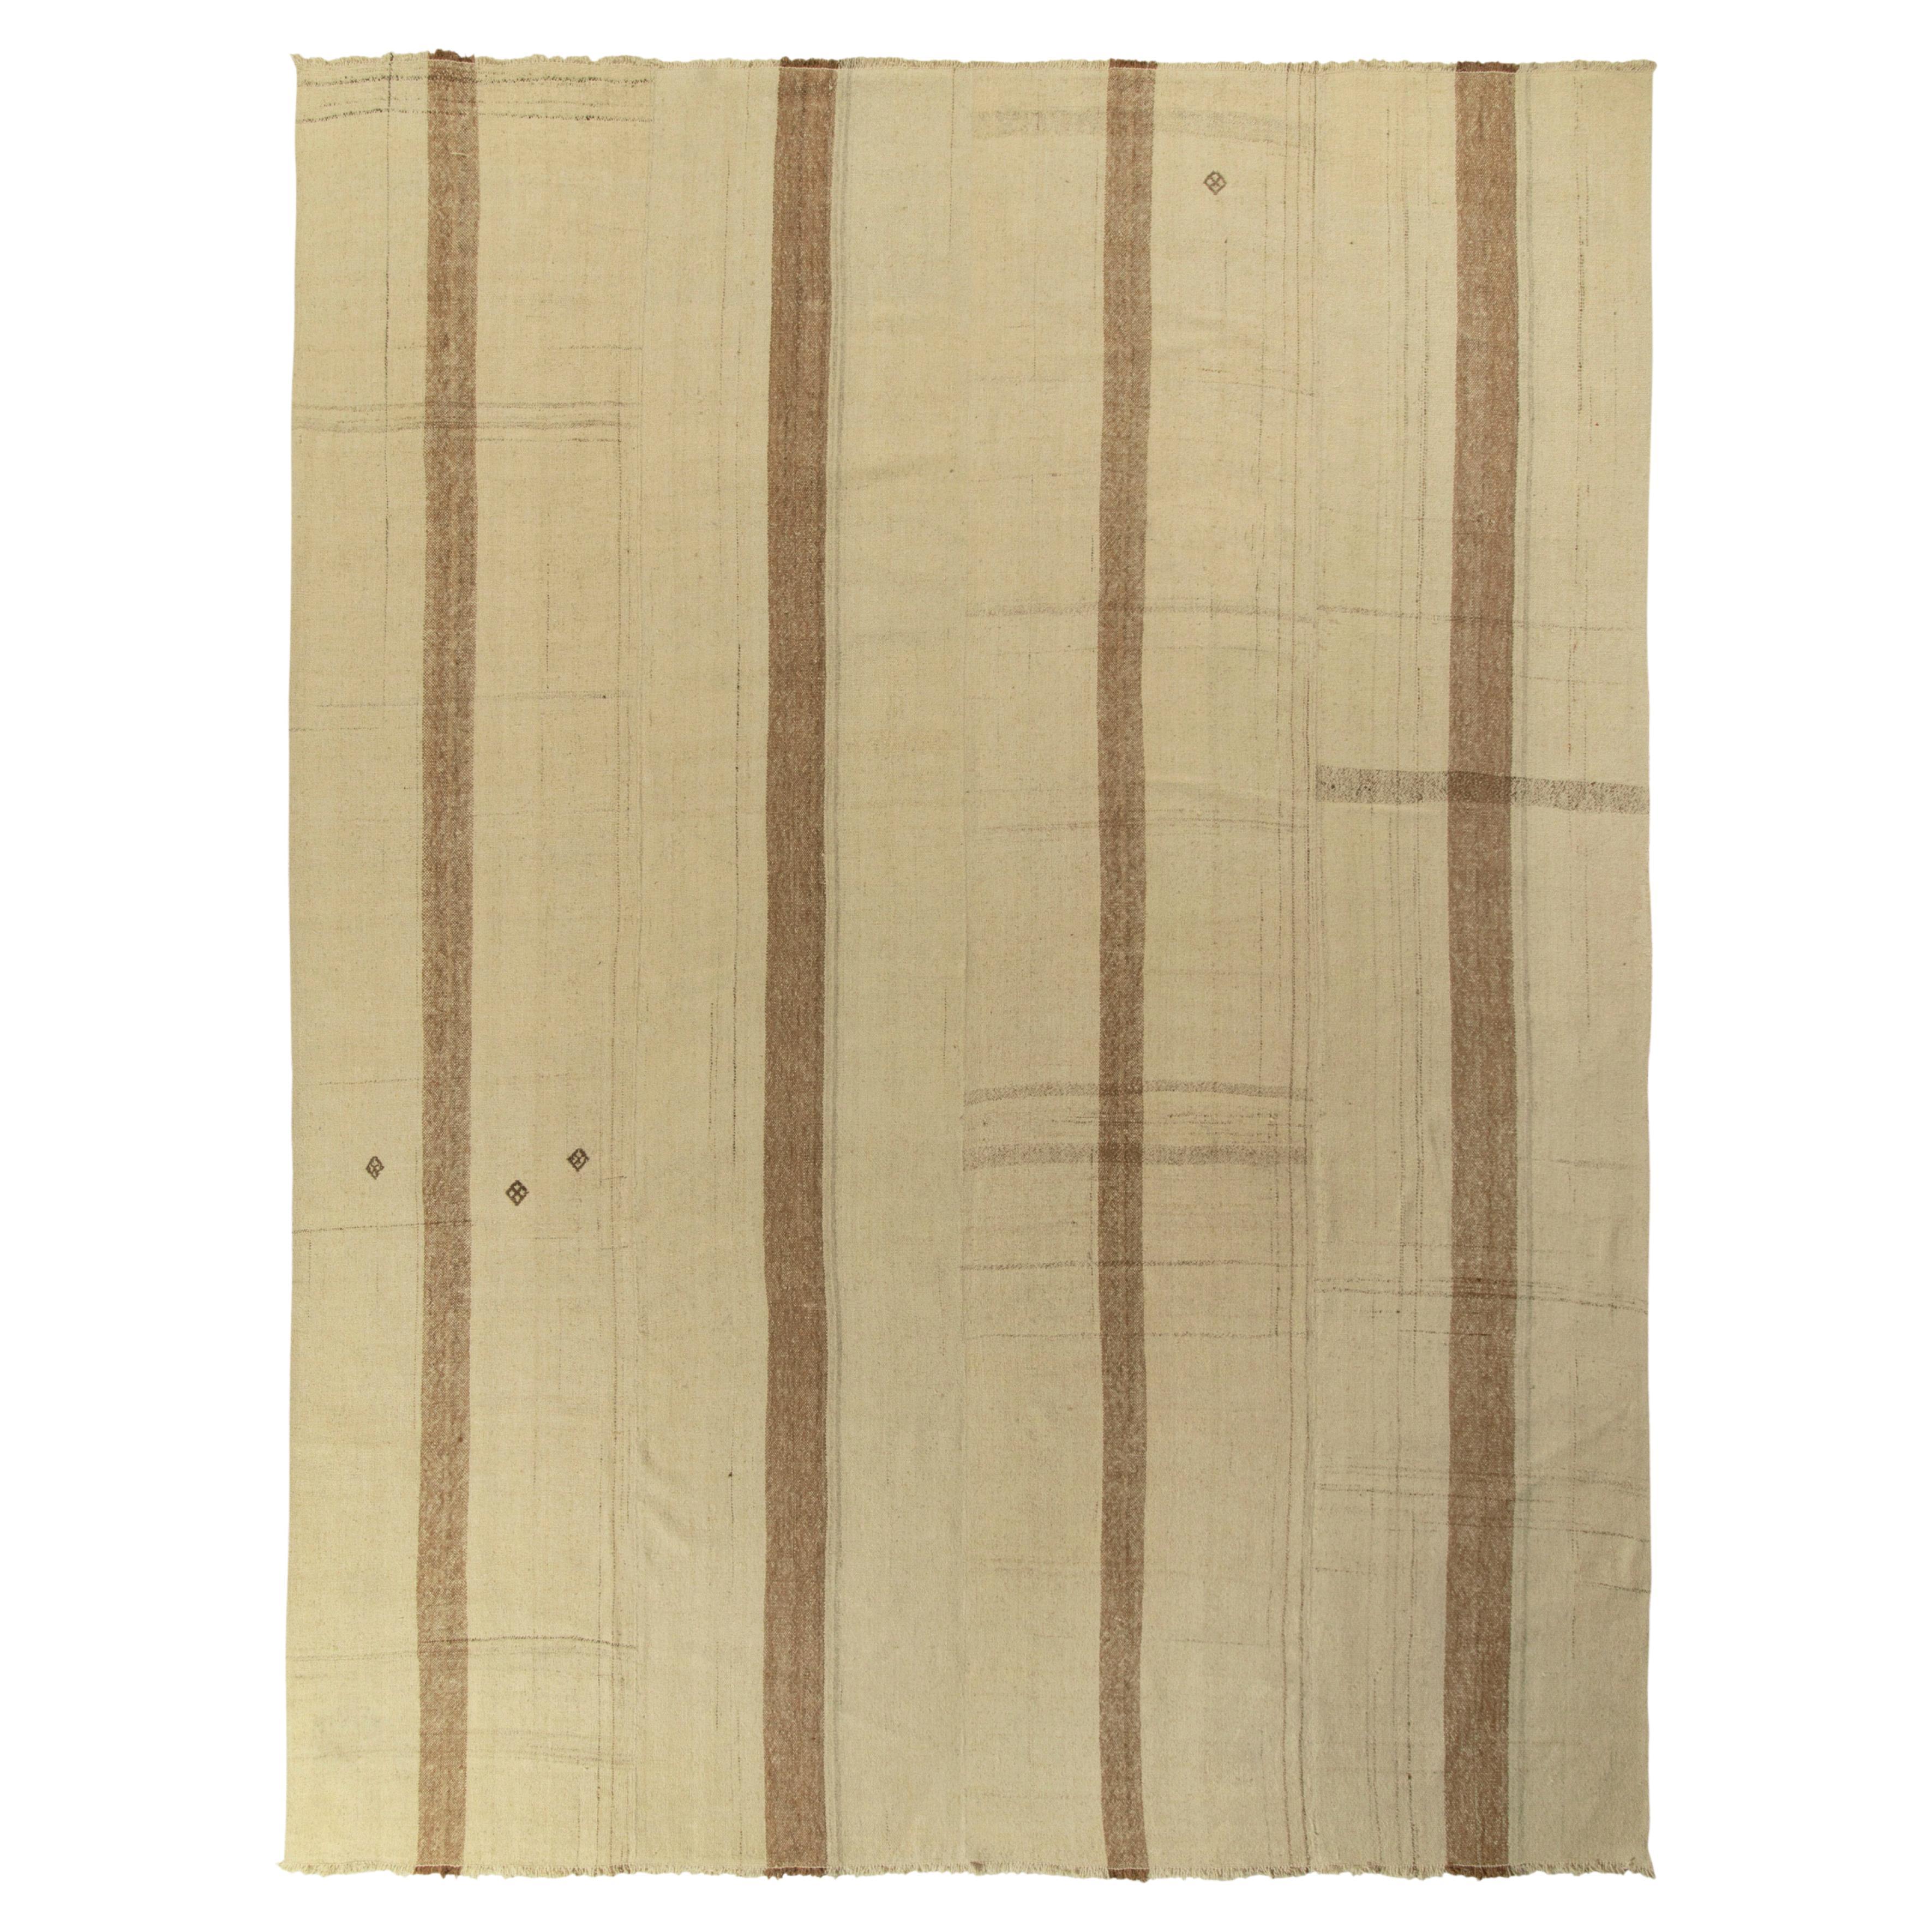 Vintage Kilim Rug in Beige, Brown Paneled Style, Striped Pattern by Rug & Kilim